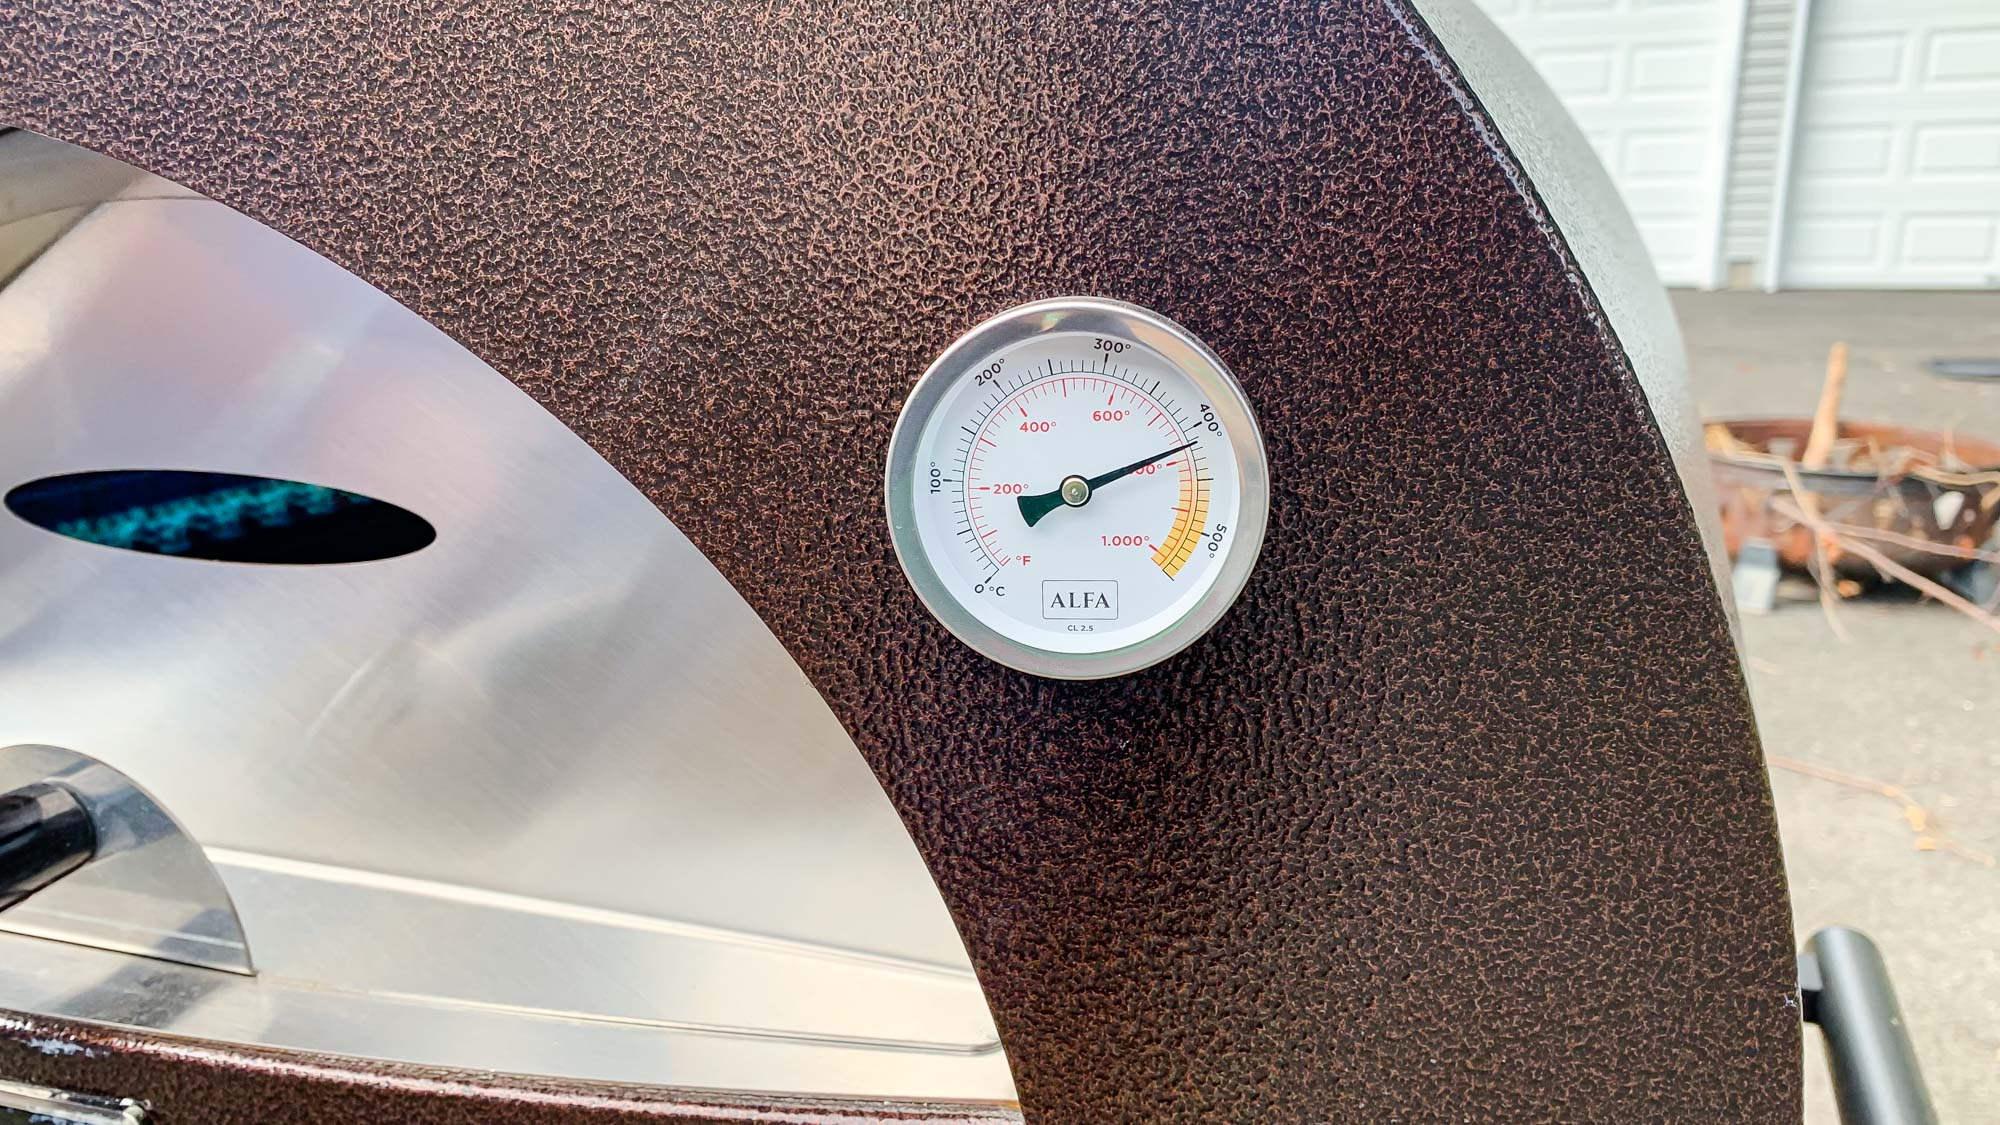 Alfa Nano cooking thermometer